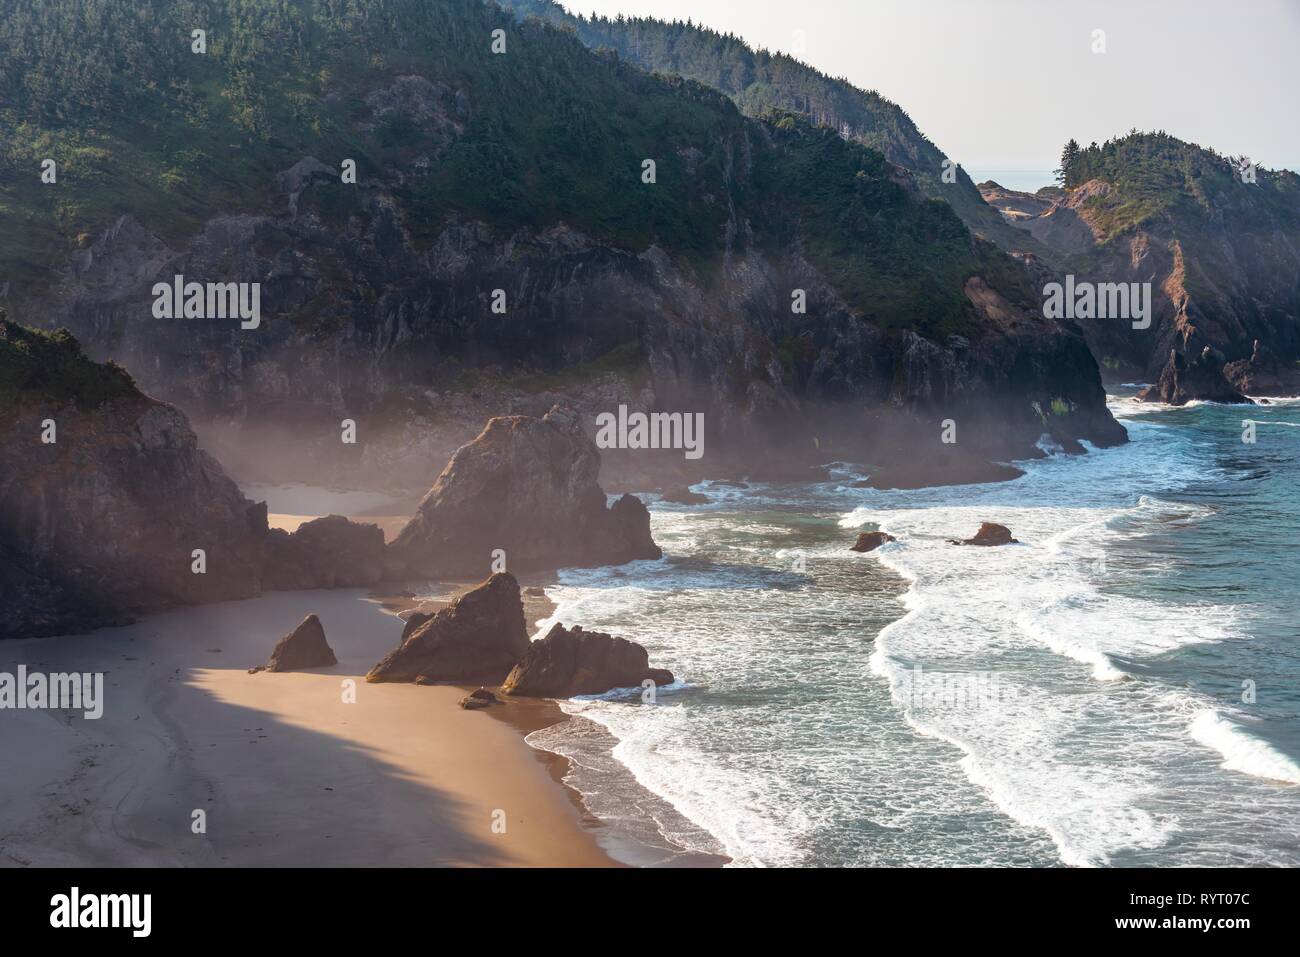 Paysage côtier, plage de sable fin de la mer avec rochers escarpés, Samuel H. Boardman State Scenic Corridor, Oregon, USA Banque D'Images